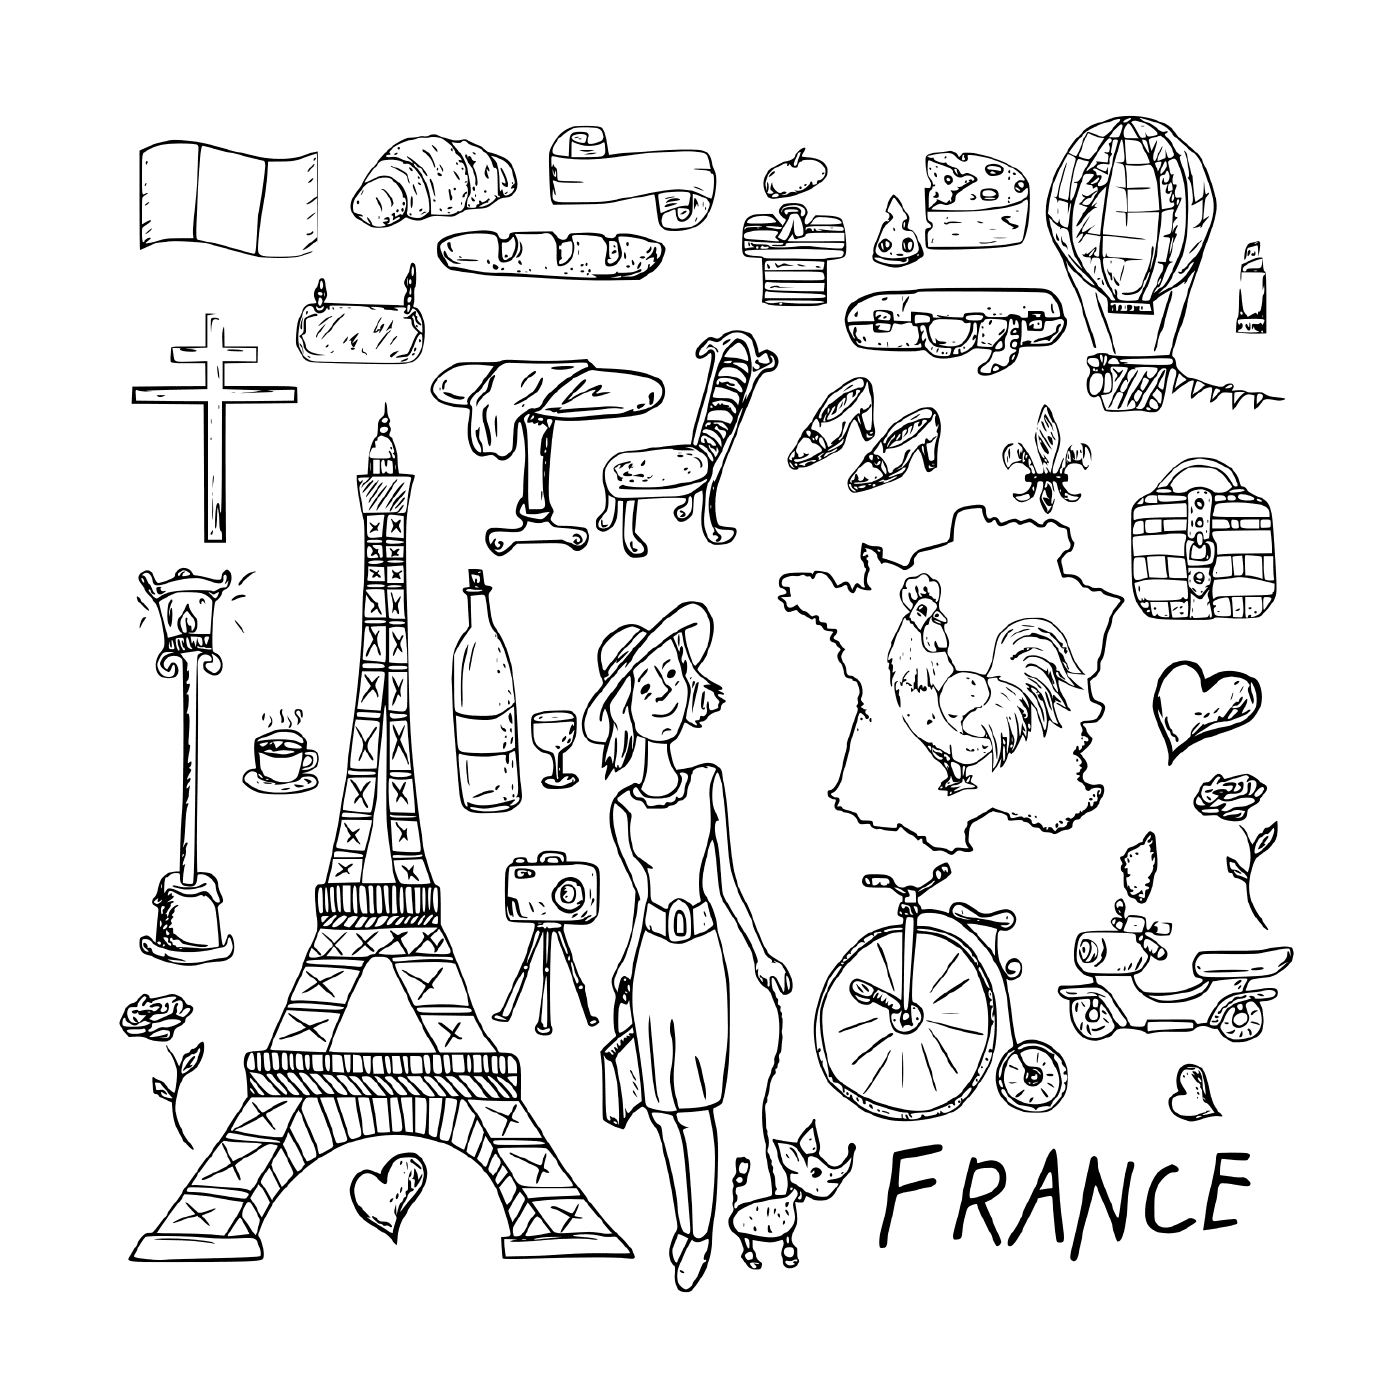  Путешествие во Францию, идеальное место назначения 